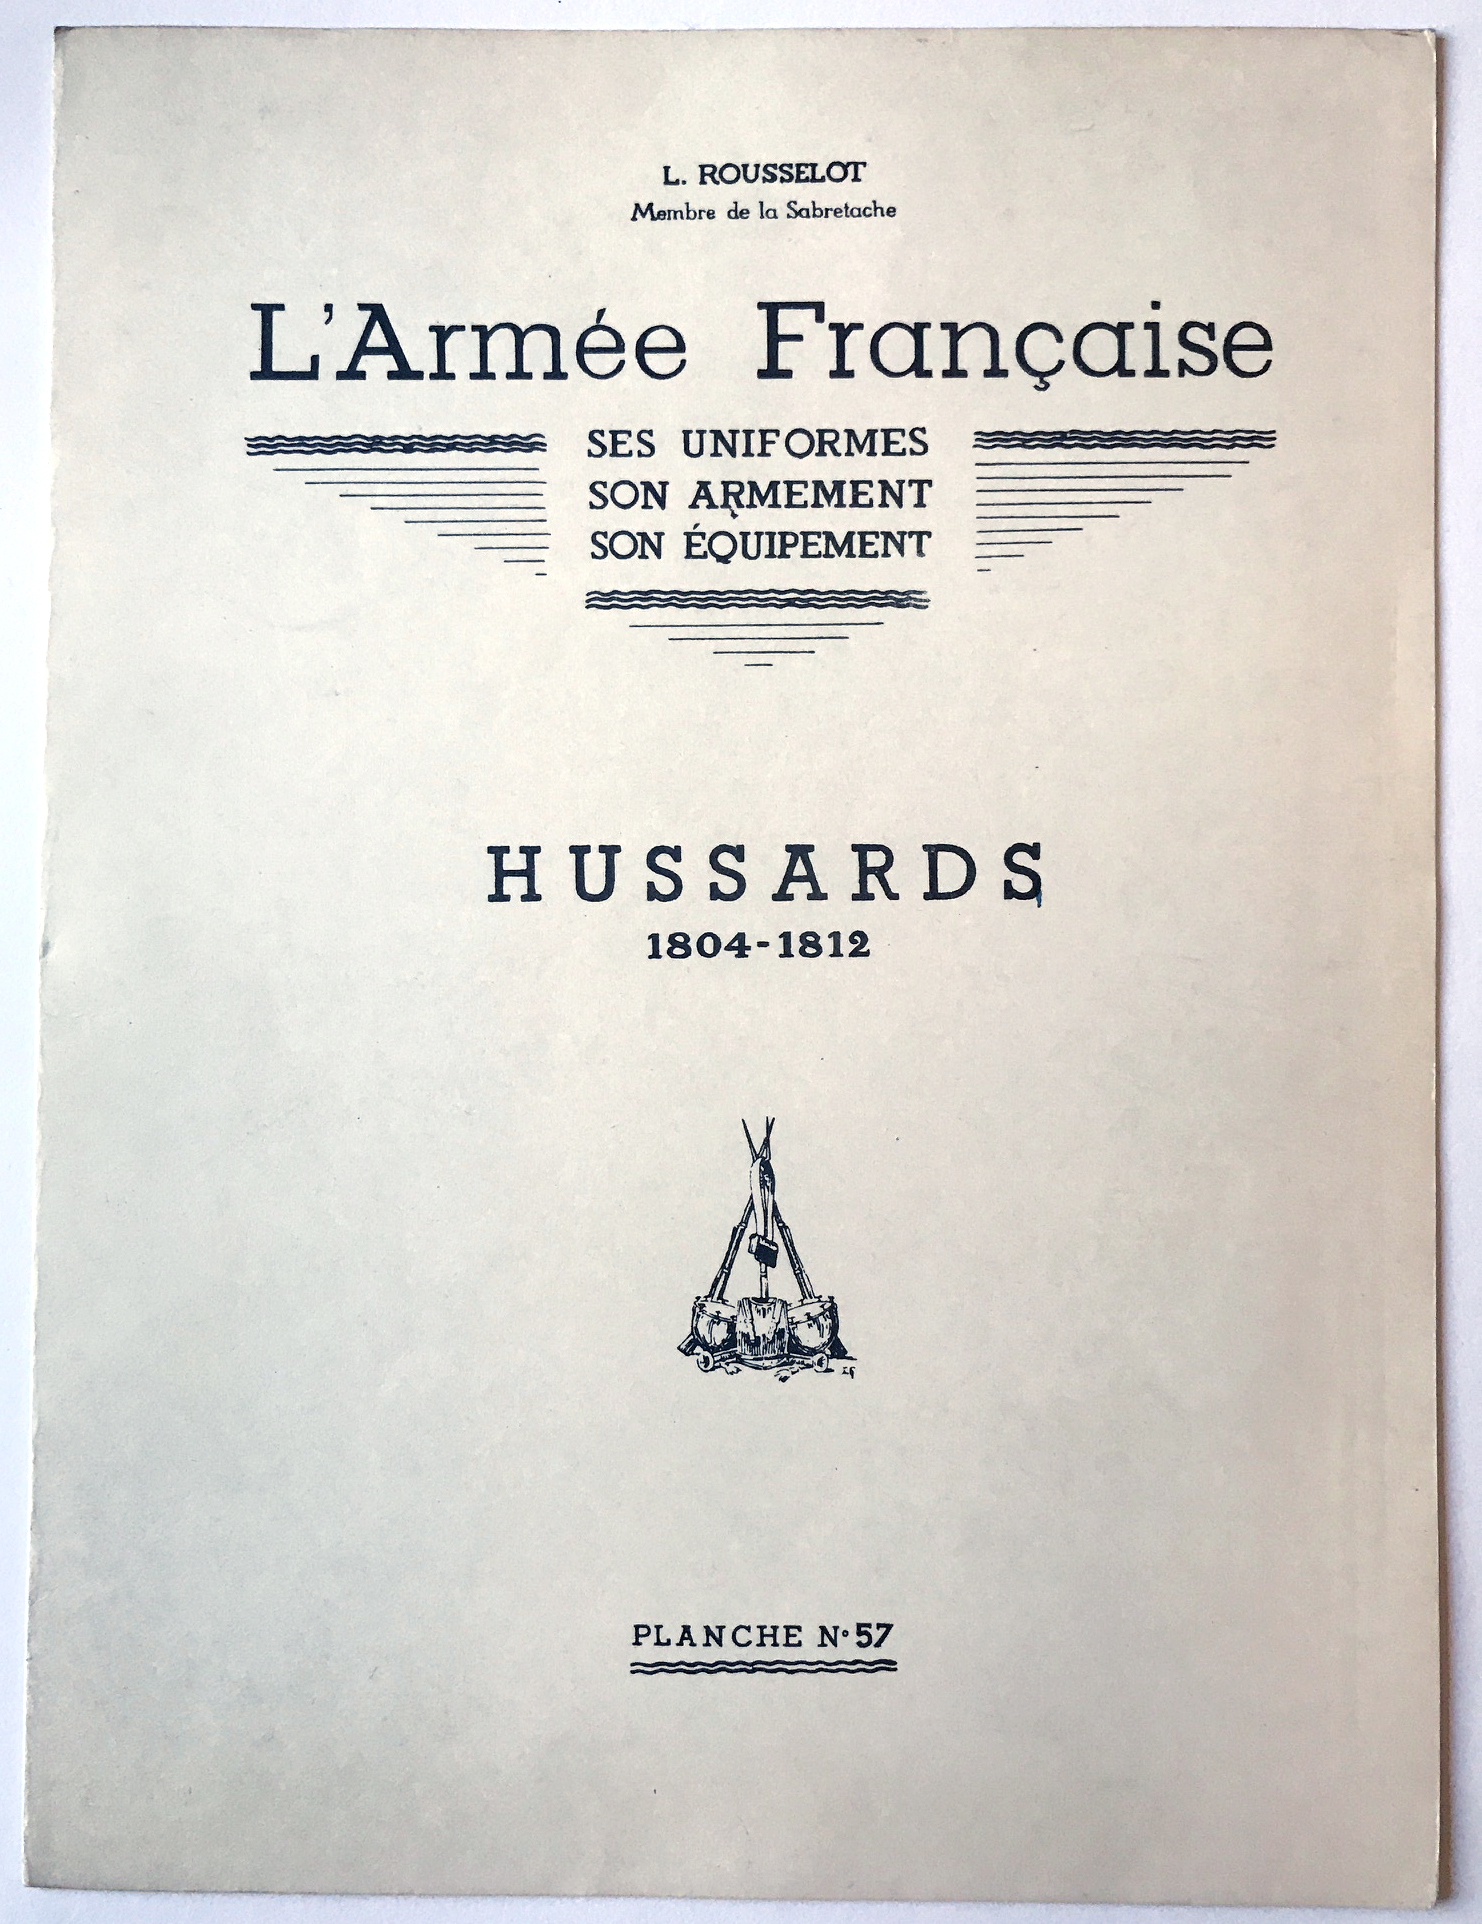 Planche sur l'armée Française N°57 - Hussards 1804/1812 - Lucien Rousselot 1957